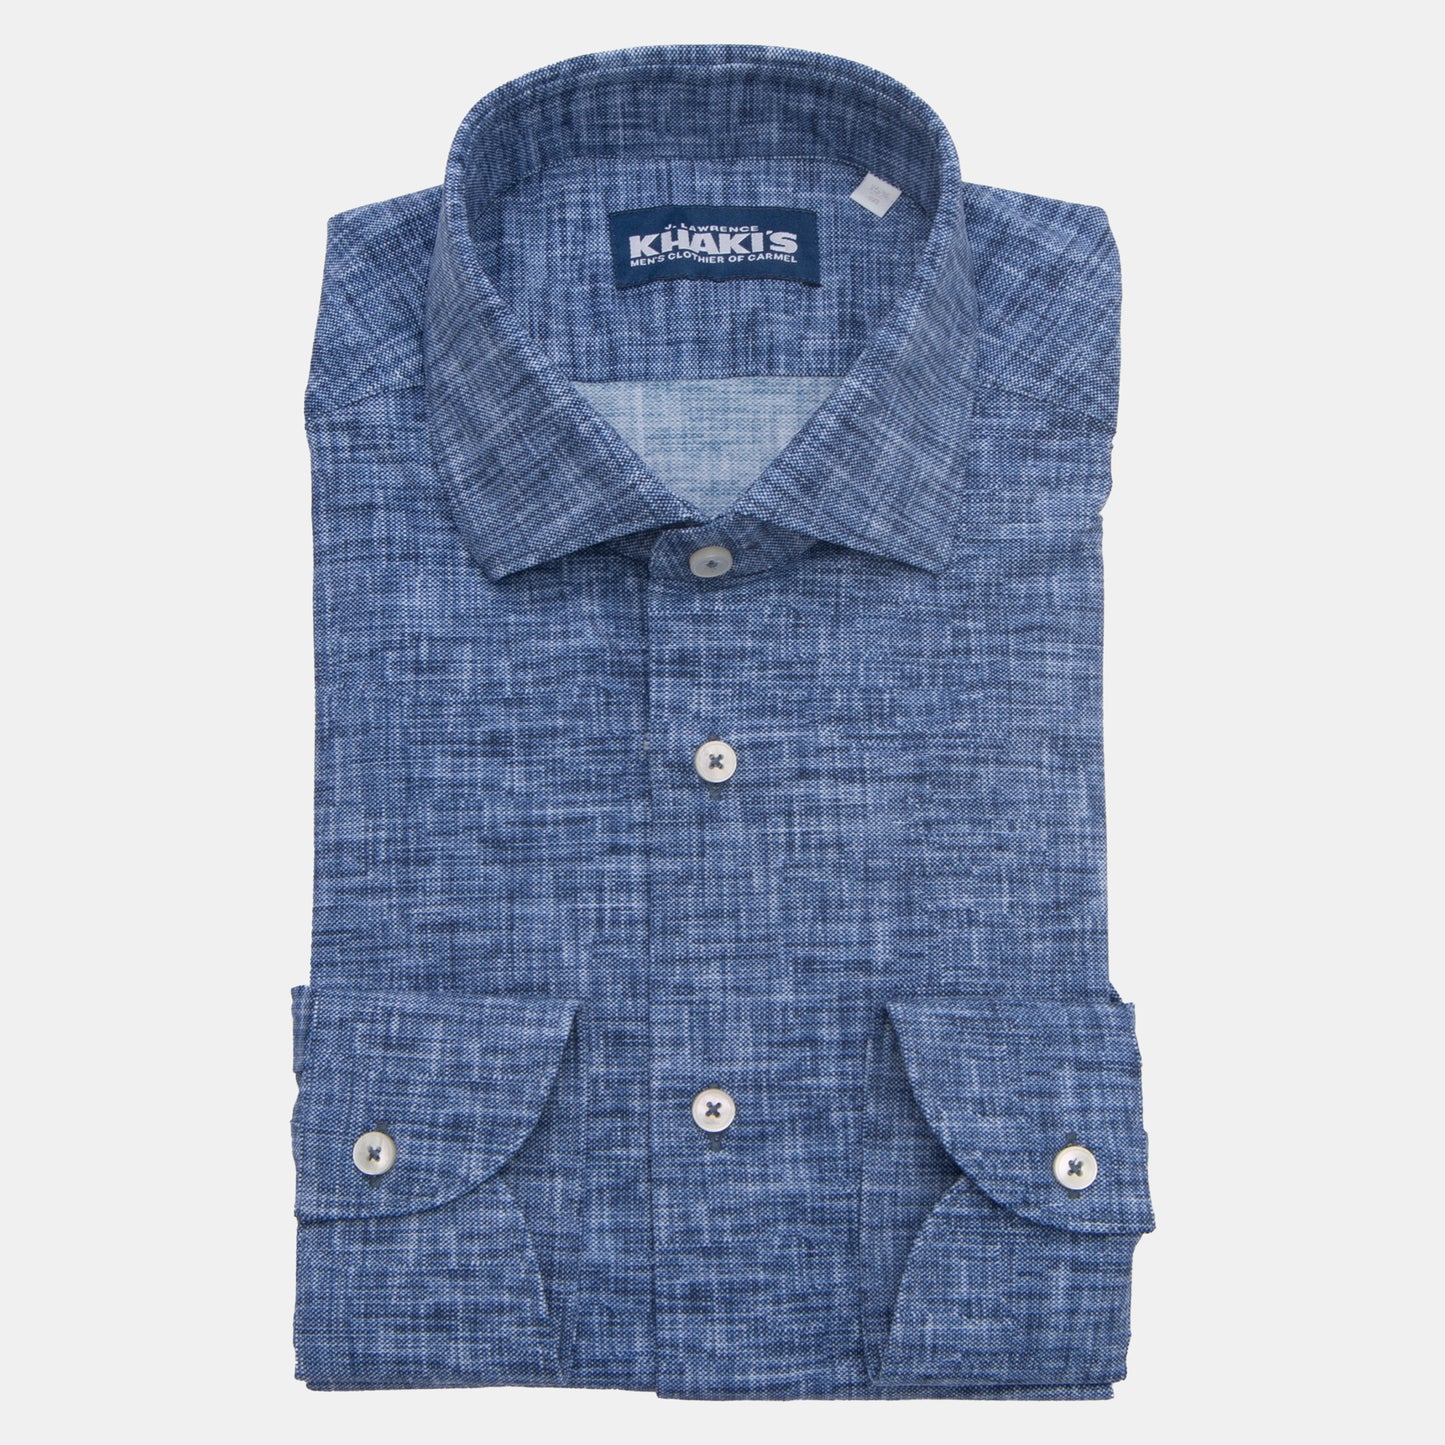 Khaki’s of Carmel - Navy Shirt